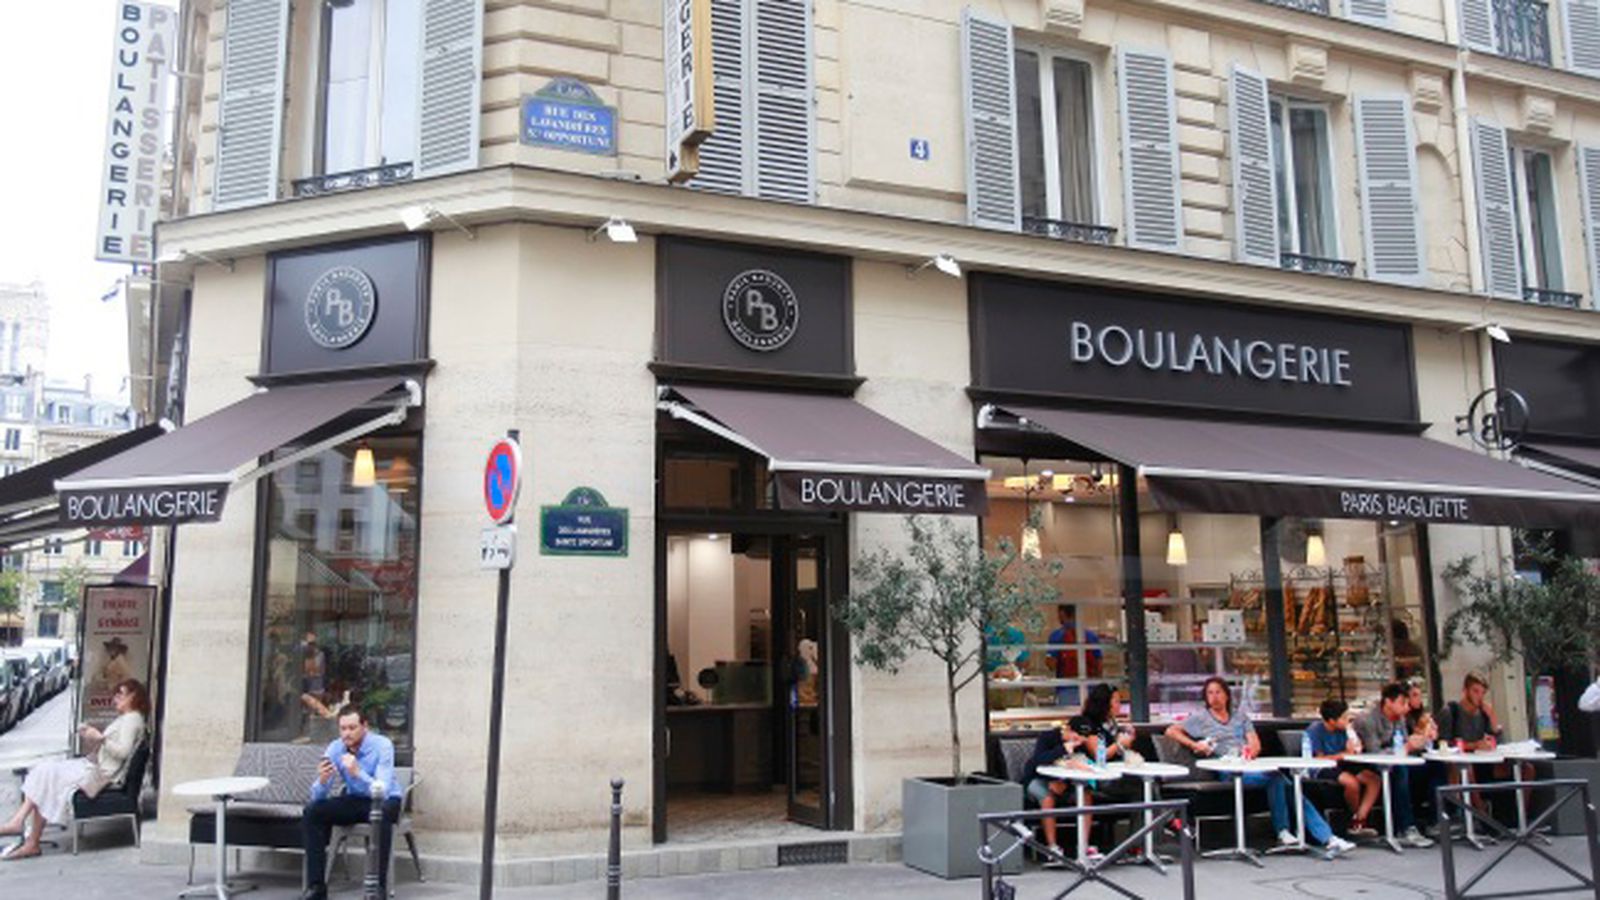 Korean Bakery Paris Baguette Opens a Location in Paris - Eater